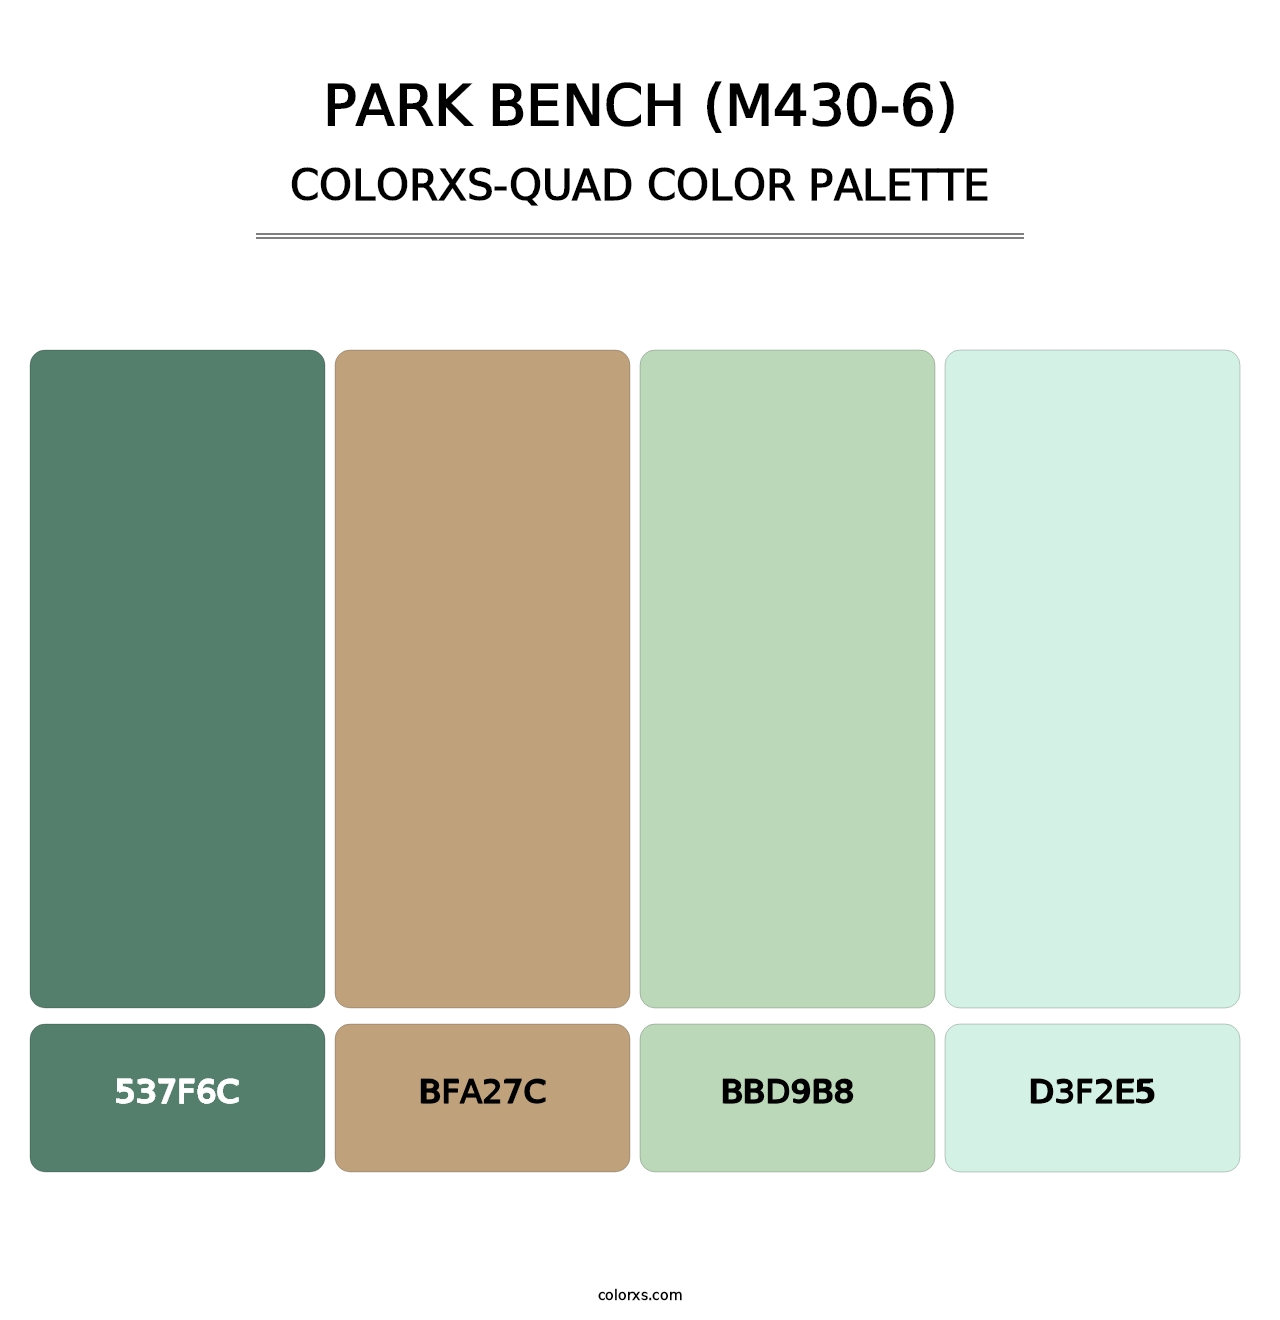 Park Bench (M430-6) - Colorxs Quad Palette